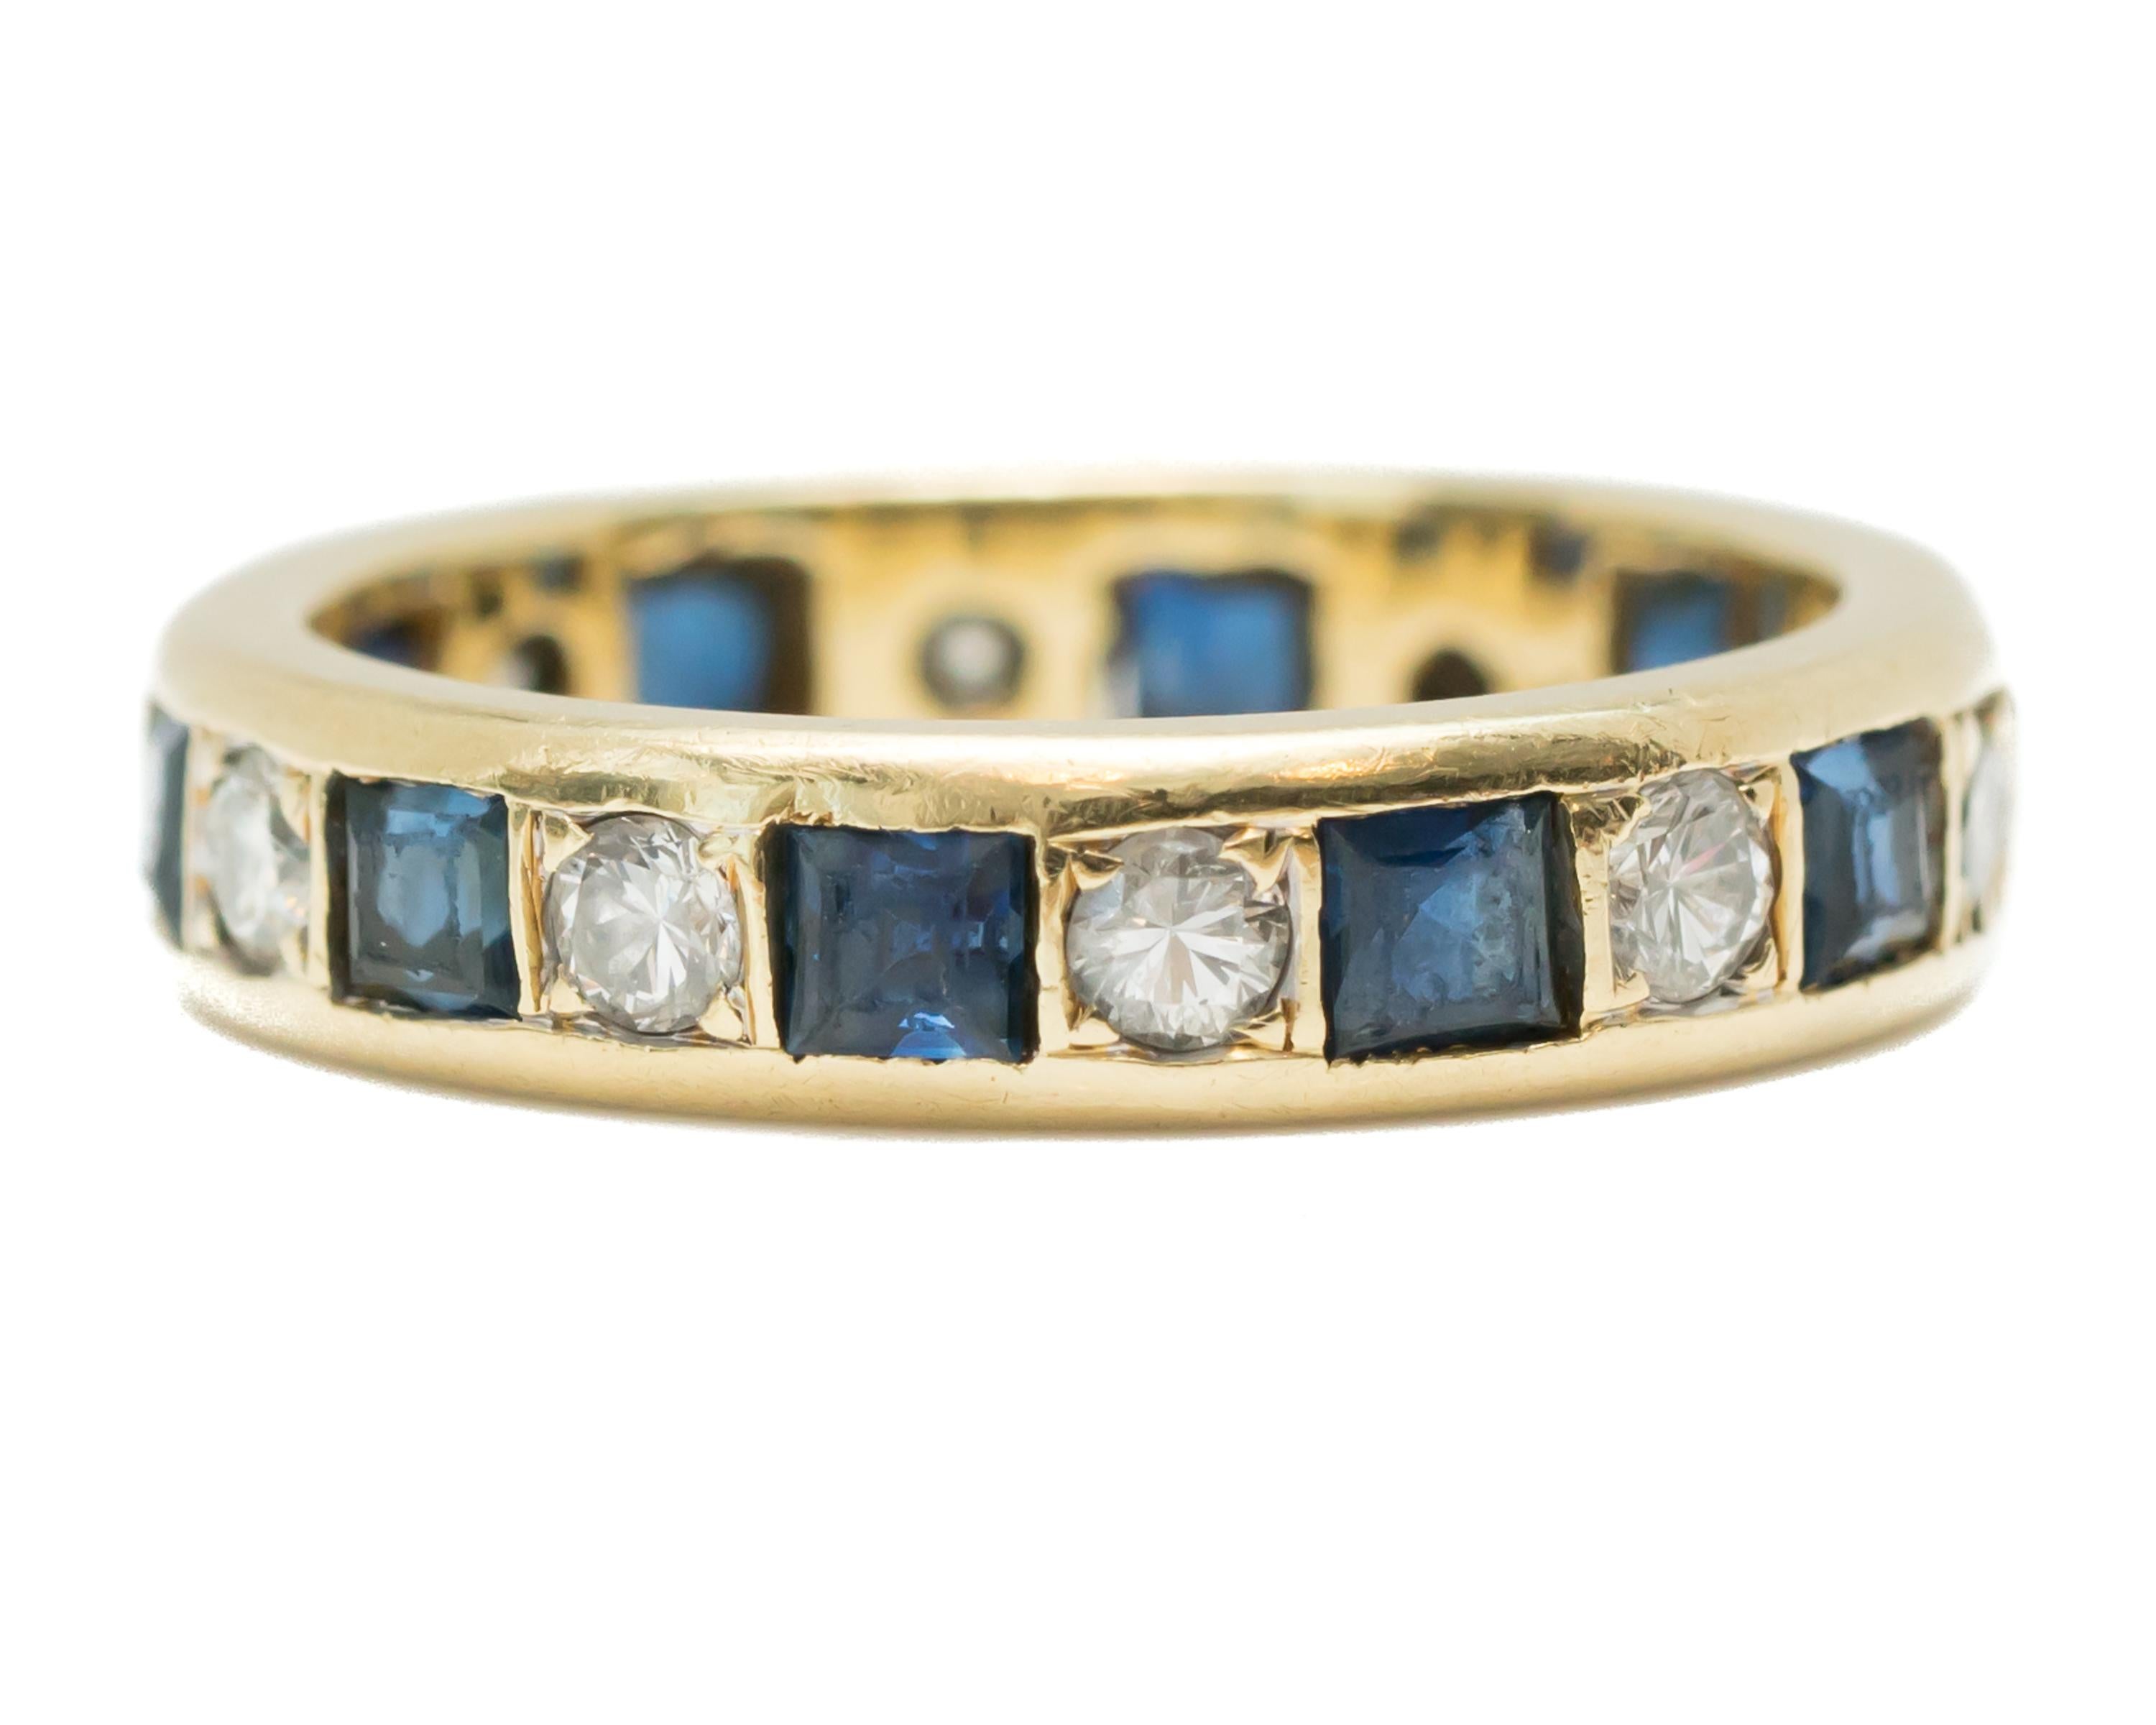 Bracelet éternel saphir rétro des années 1950 - Or jaune 14 carats, saphirs, diamants

Caractéristiques : 
0,25 carat total de saphirs bleus
0,25 carat de diamants au total
Or jaune 14 carats
Taille française, saphirs bleus sertis en chaton
Diamants